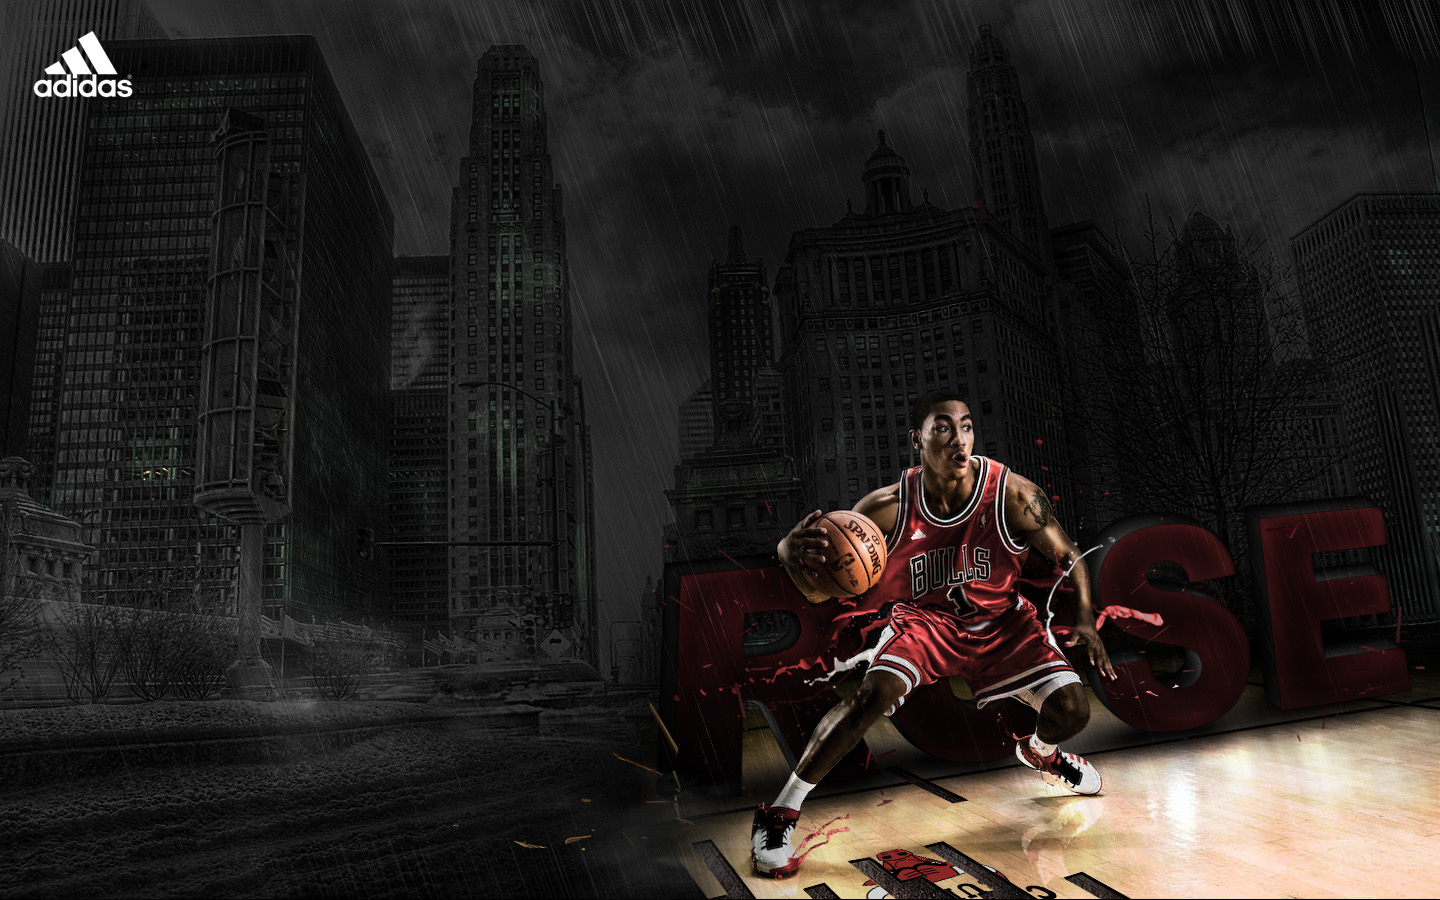 Derrick Rose Basketball Wallpaper Nba Basket Ball